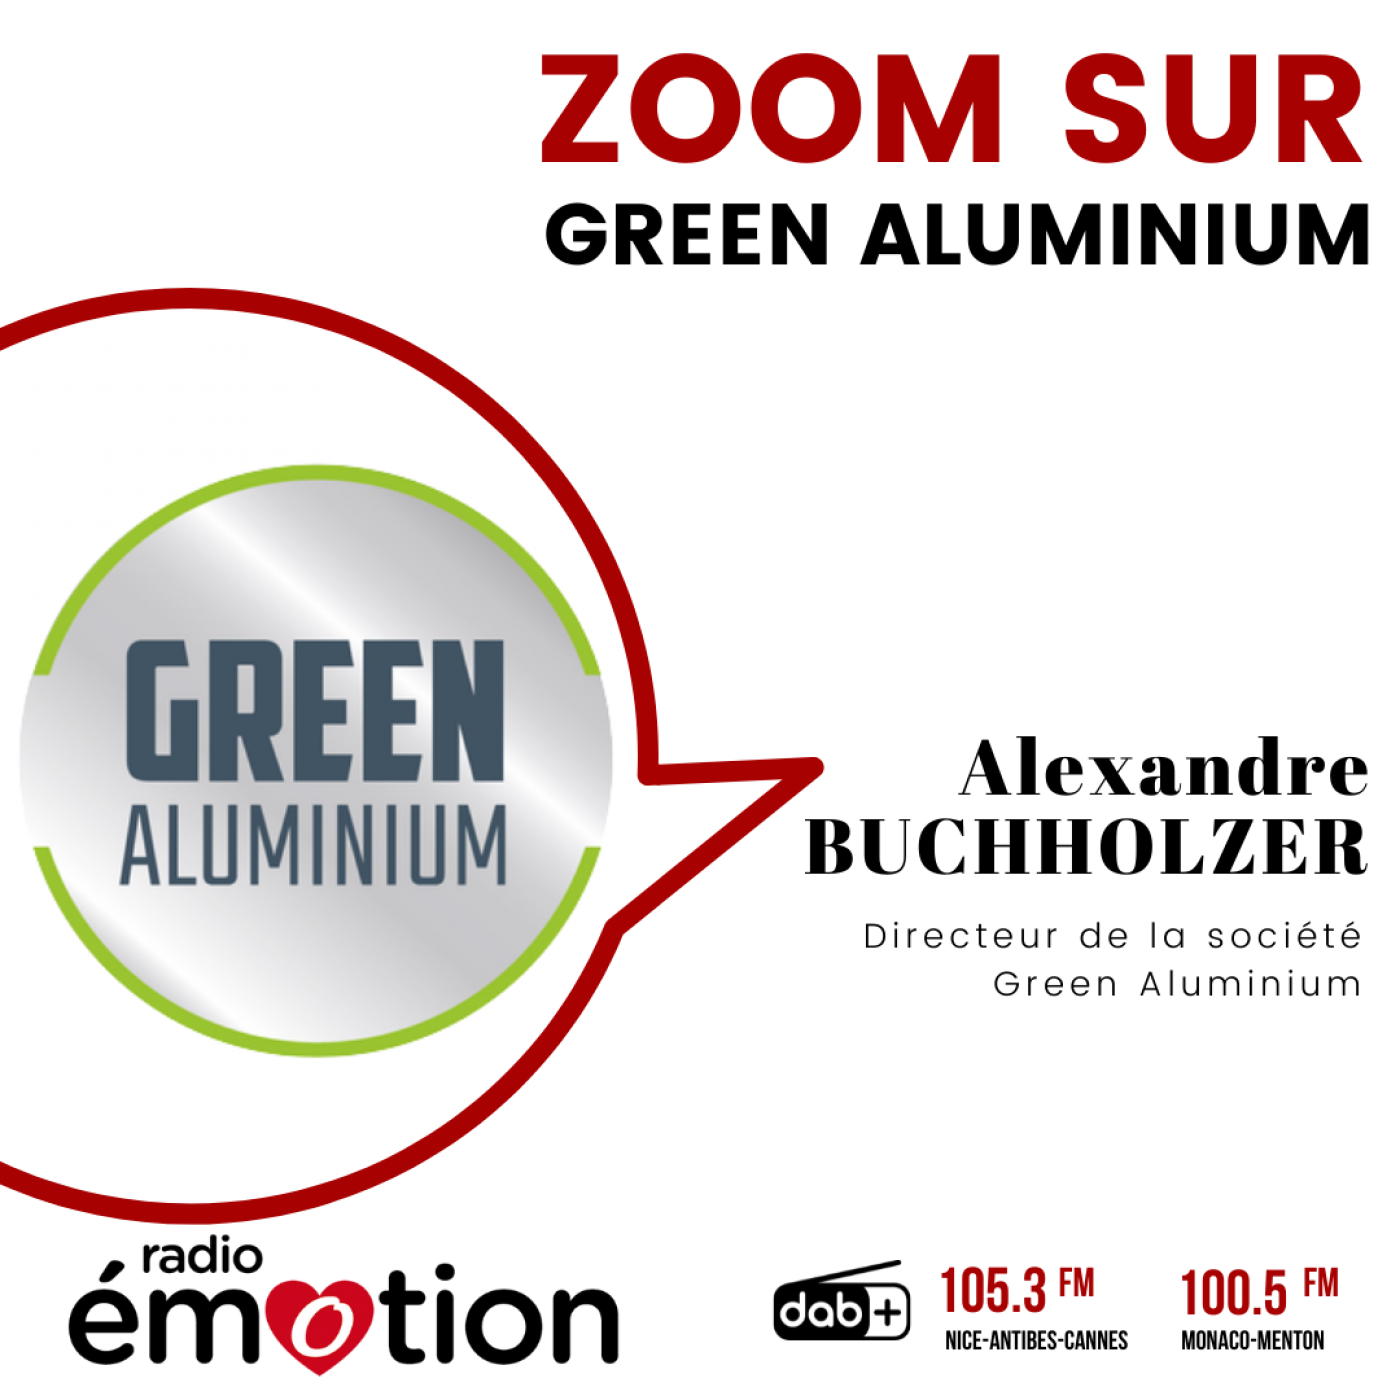 Zoom sur Green Aluminium